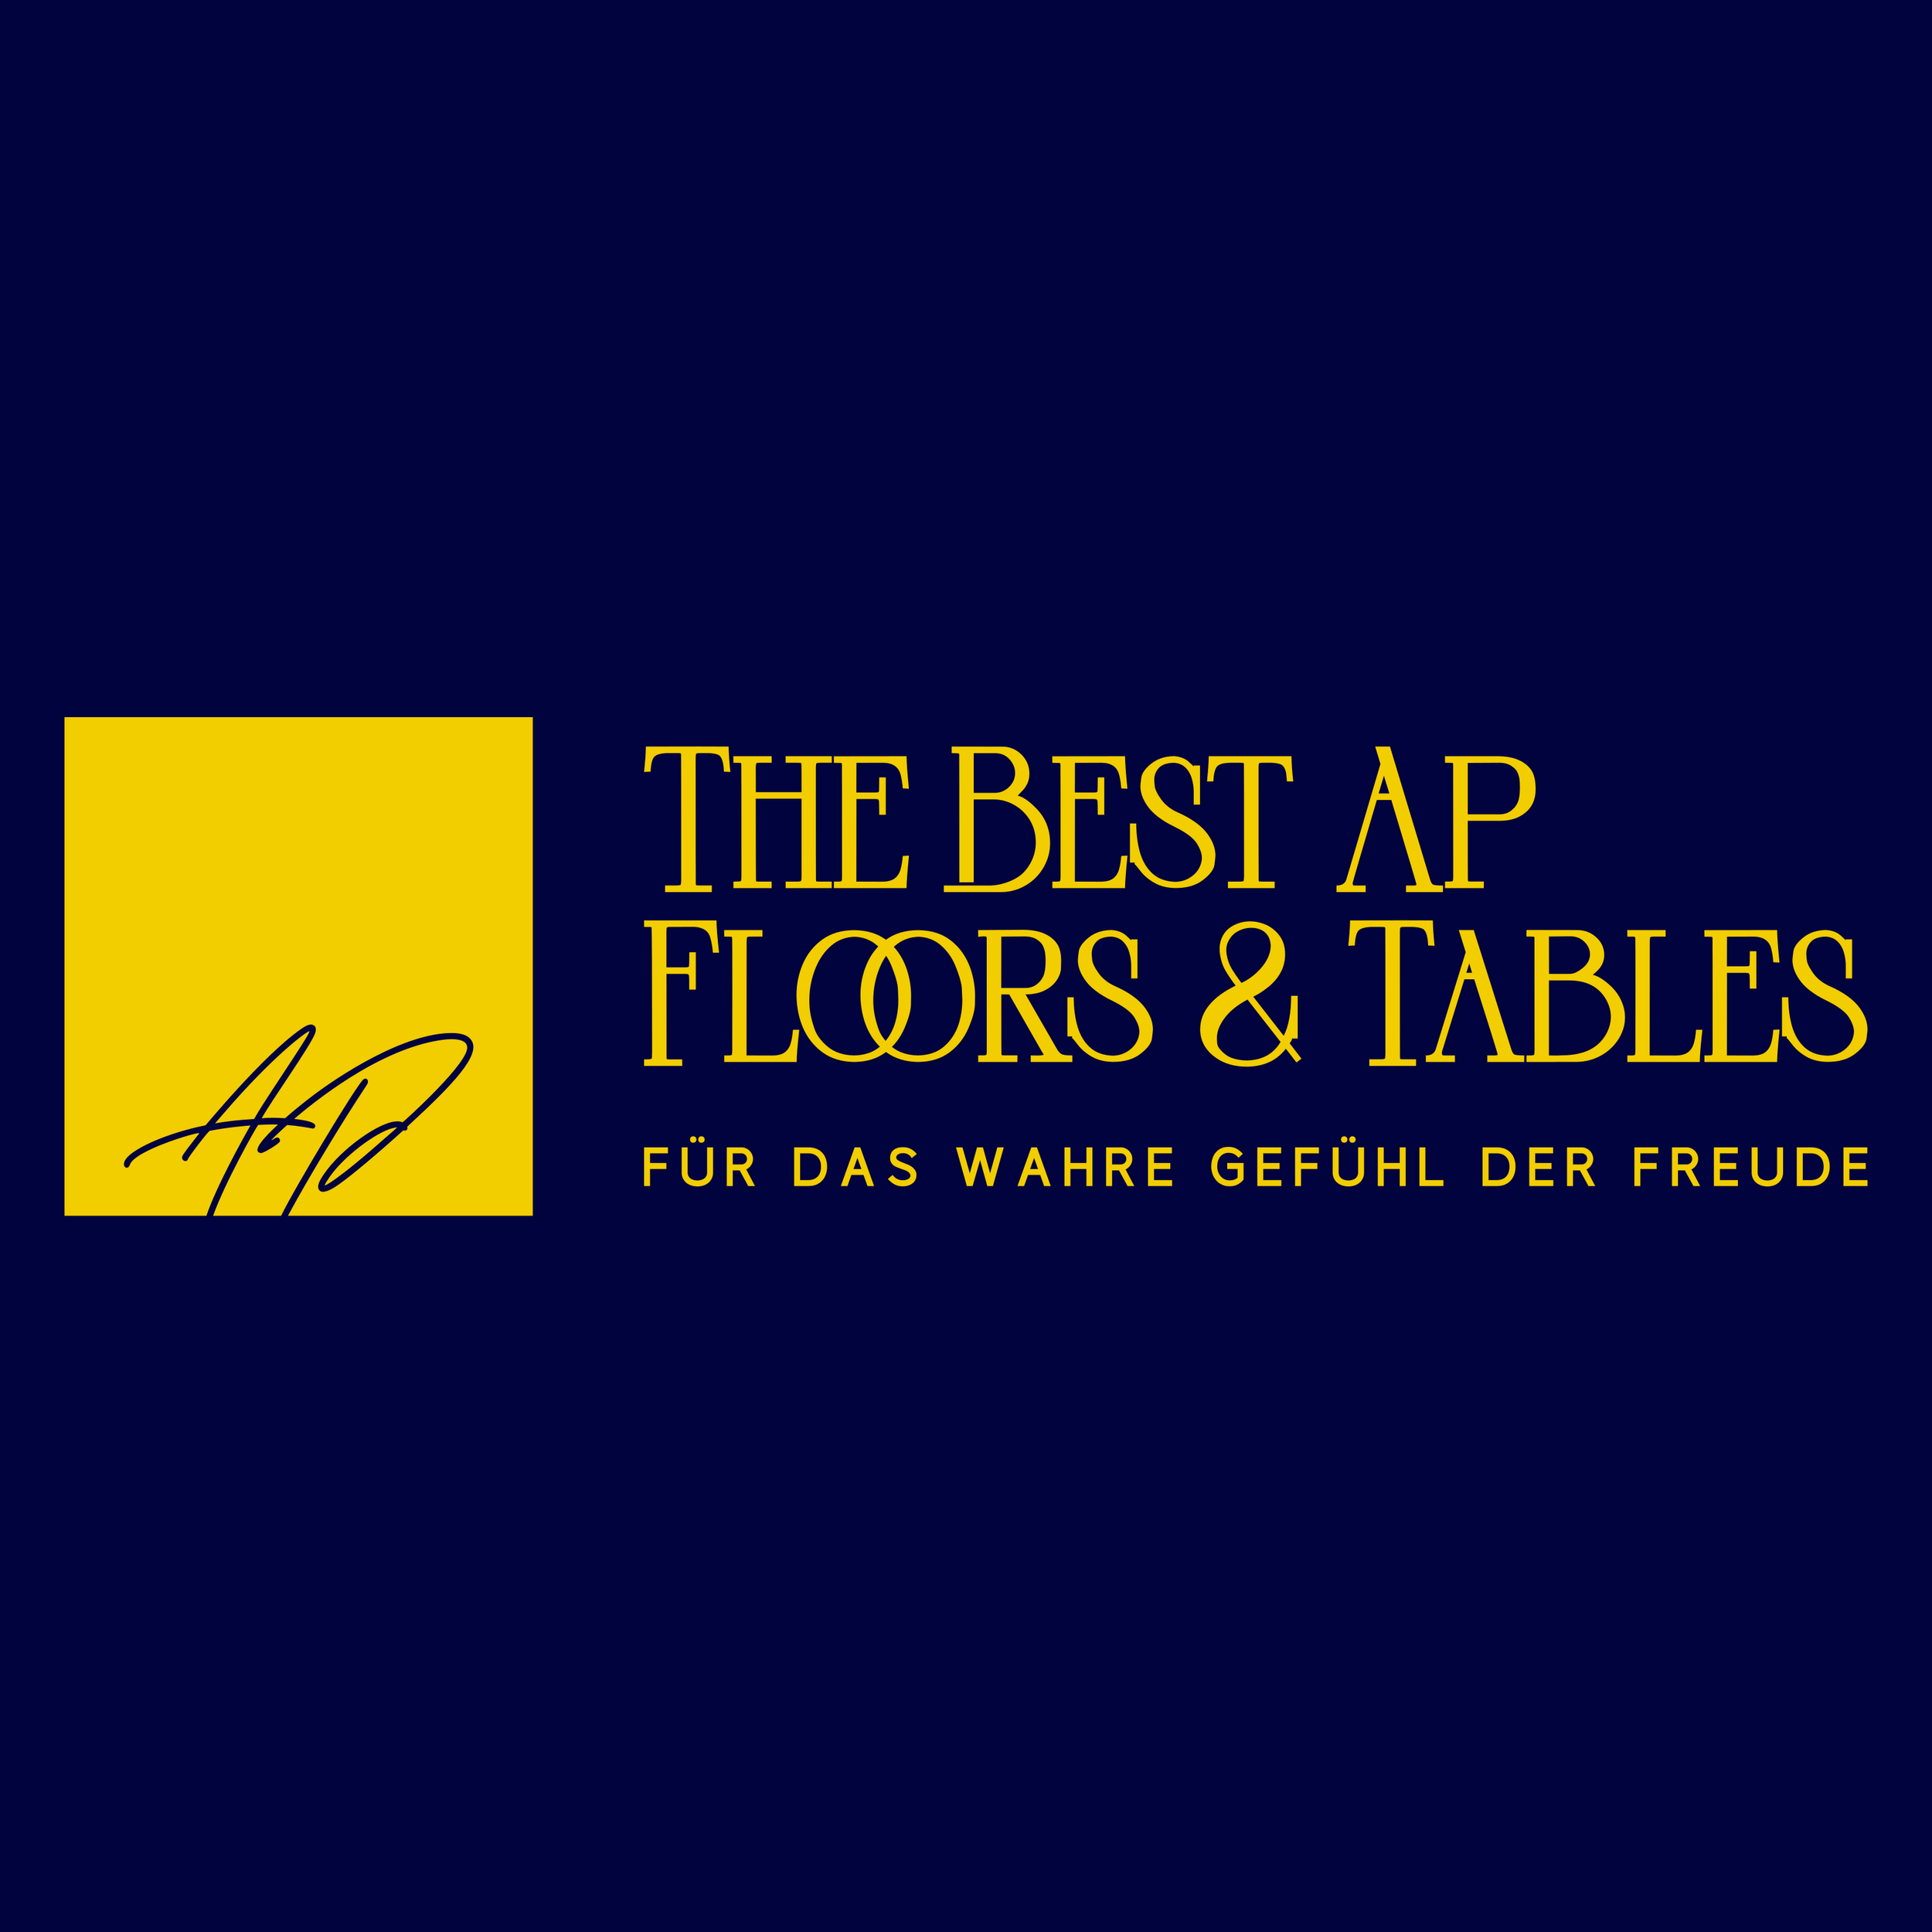 The Best AP in Neustadt an der Weinstrasse - Logo